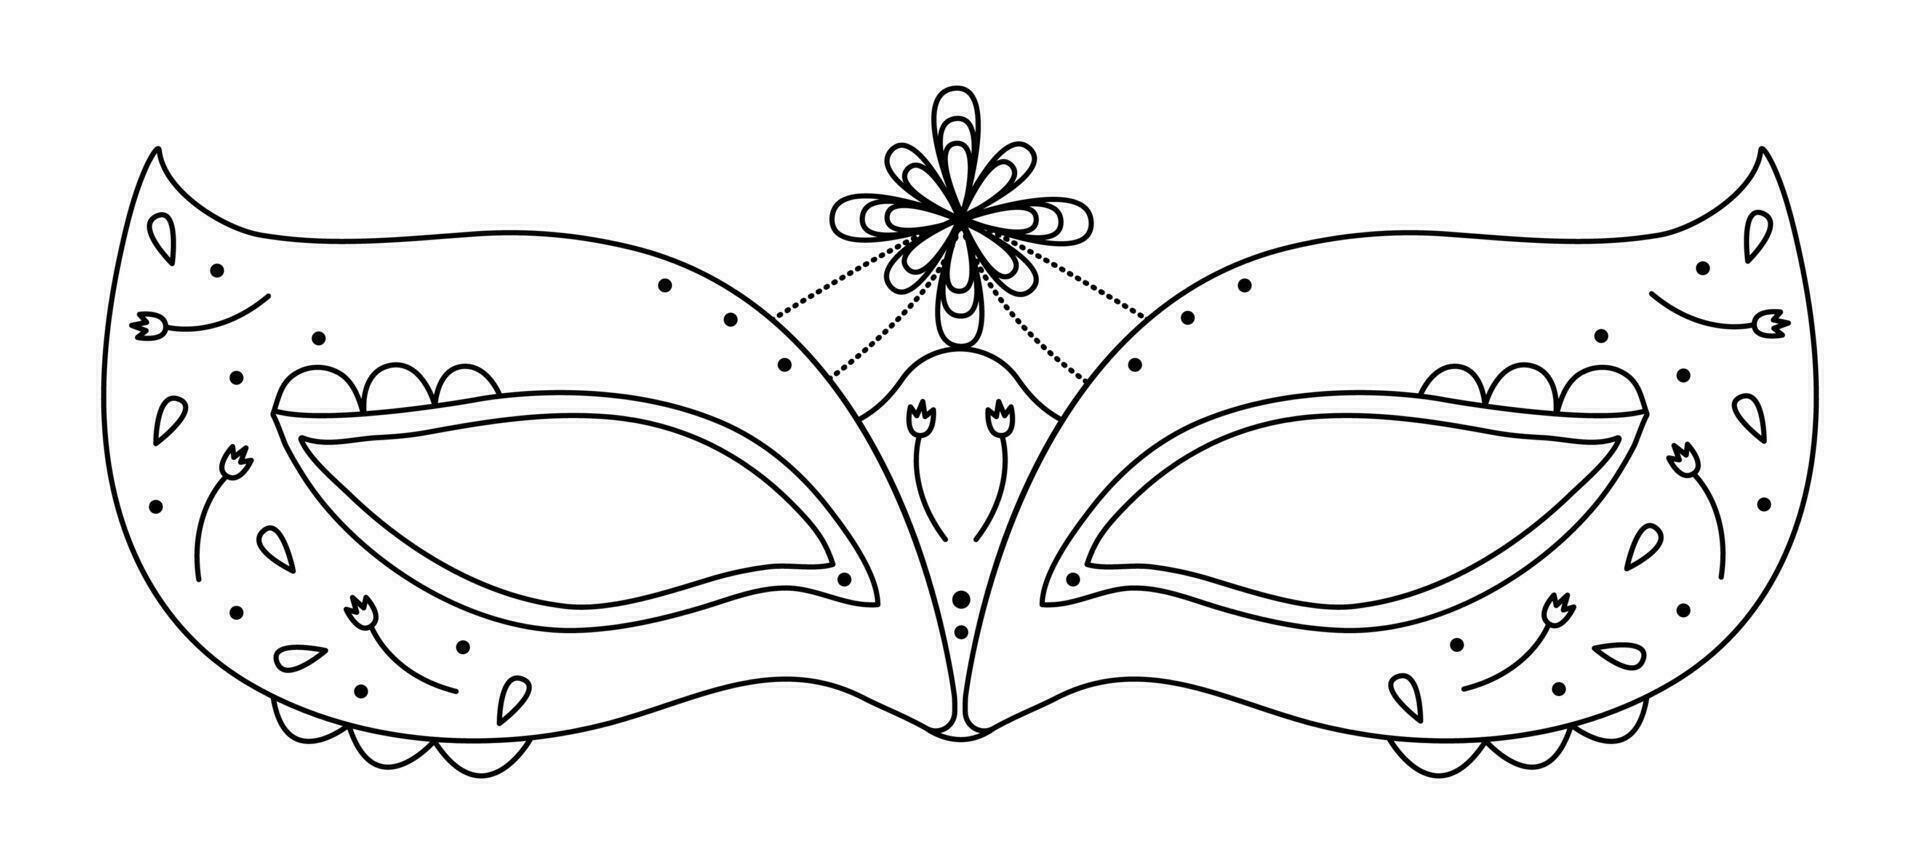 svart linje maskerad mask för purim och la mascarada, illustration för karneval vektor